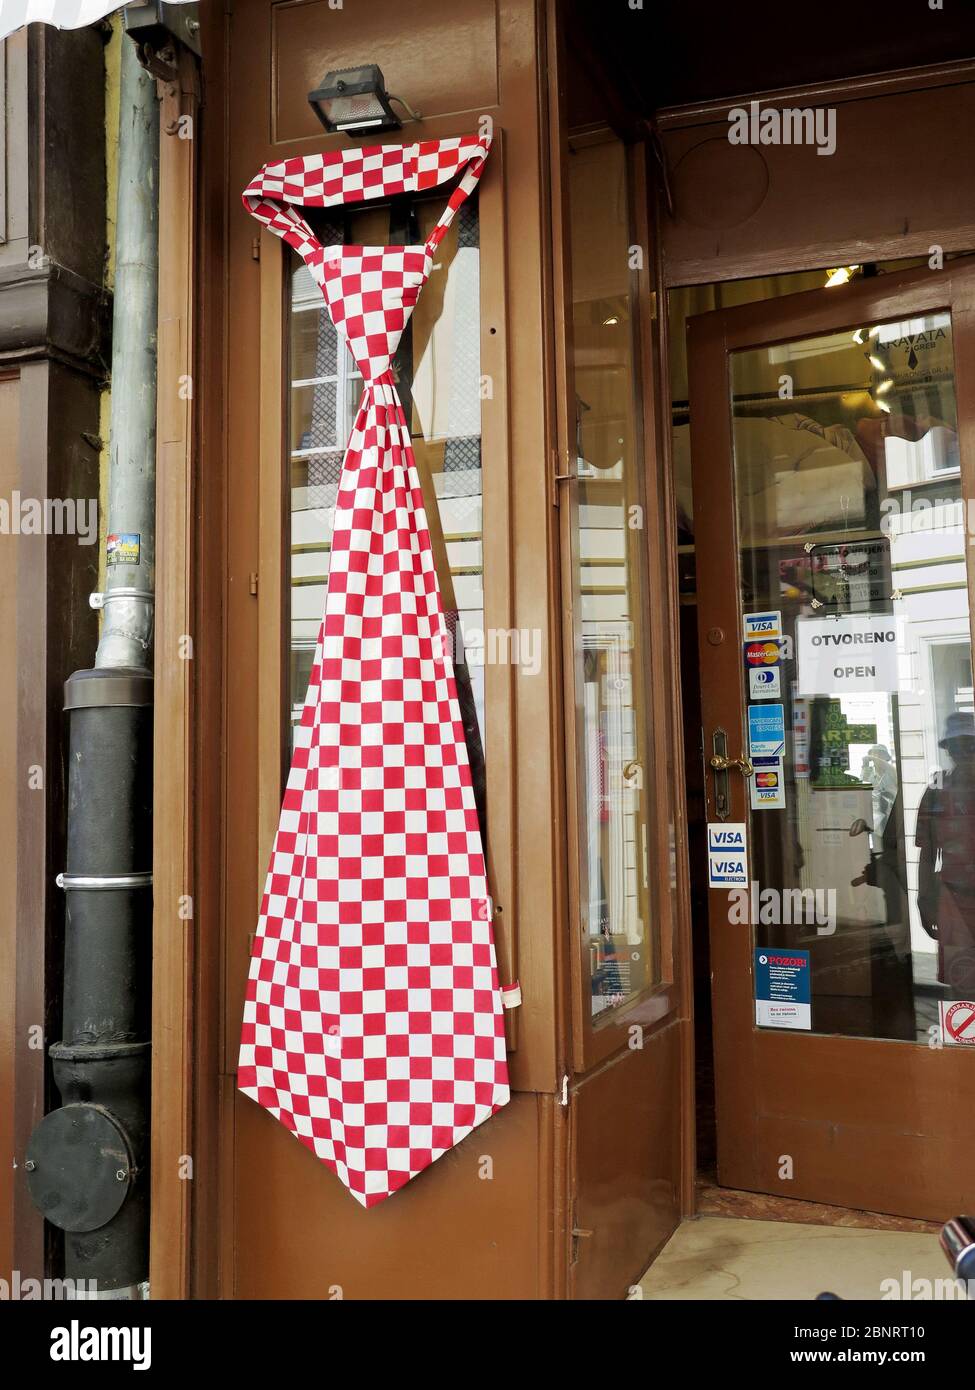 Der Ursprung der Verbindungen liegt in Kroatien. Kroatische Soldaten des  17. Jahrhunderts benutzten eine Krawatte (Kravata). In Zagreb gibt es  mehrere Krawatten-Shops für Touristen Stockfotografie - Alamy